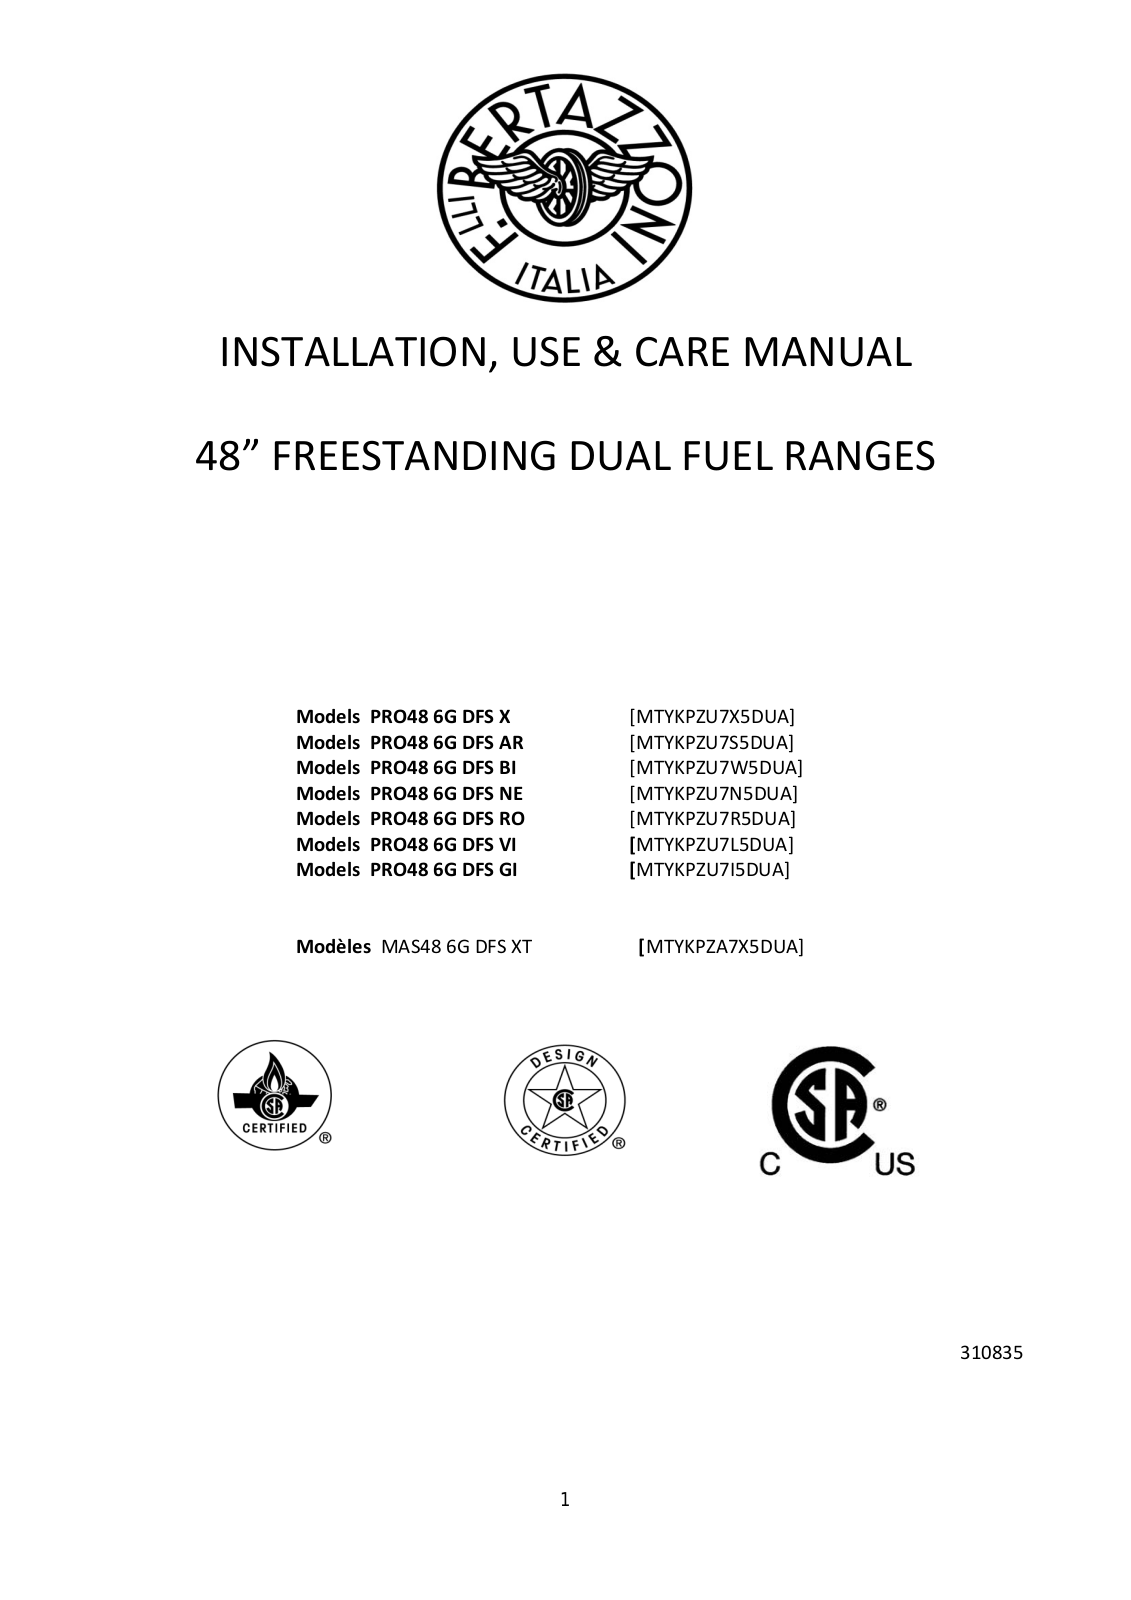 Bertazzoni PRO48 6G DFS X, PRO48 6G DFS AR, PRO48 6G DFS BI, PRO48 6G DFS NE, PRO48 6G DFS RO Owner's Manual